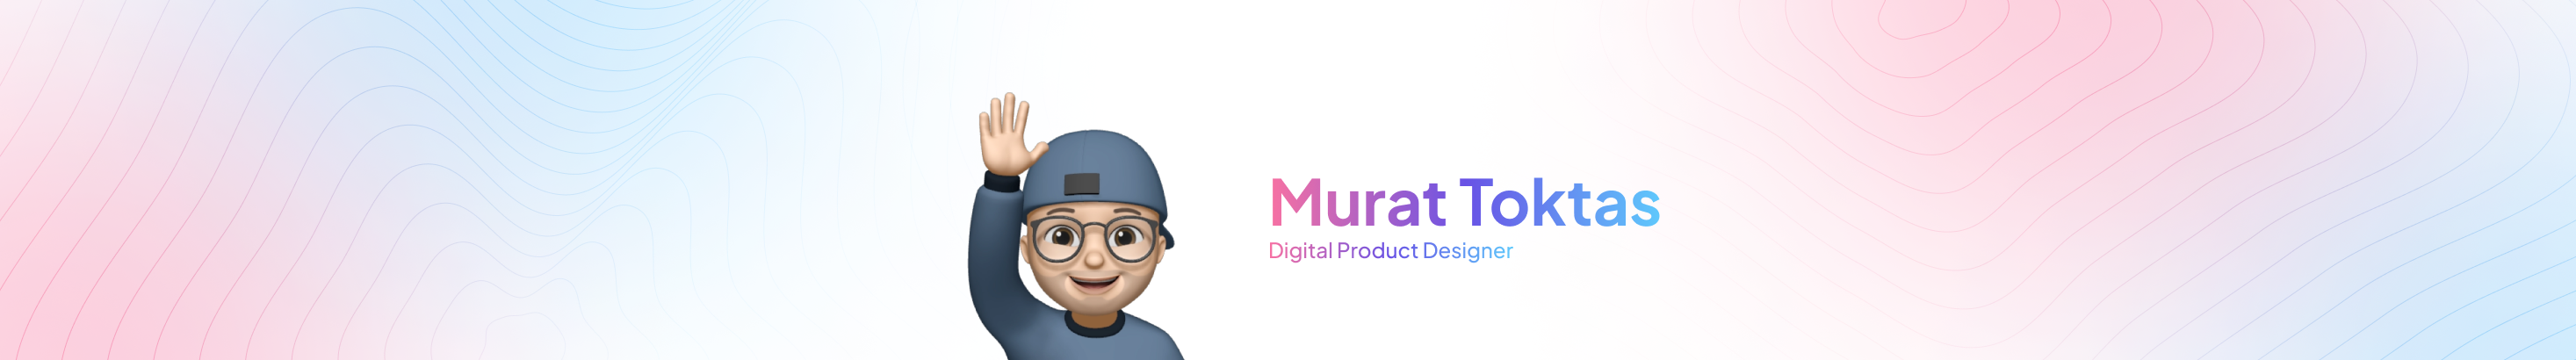 MURΛT TOKTΛS ⬗'s profile banner